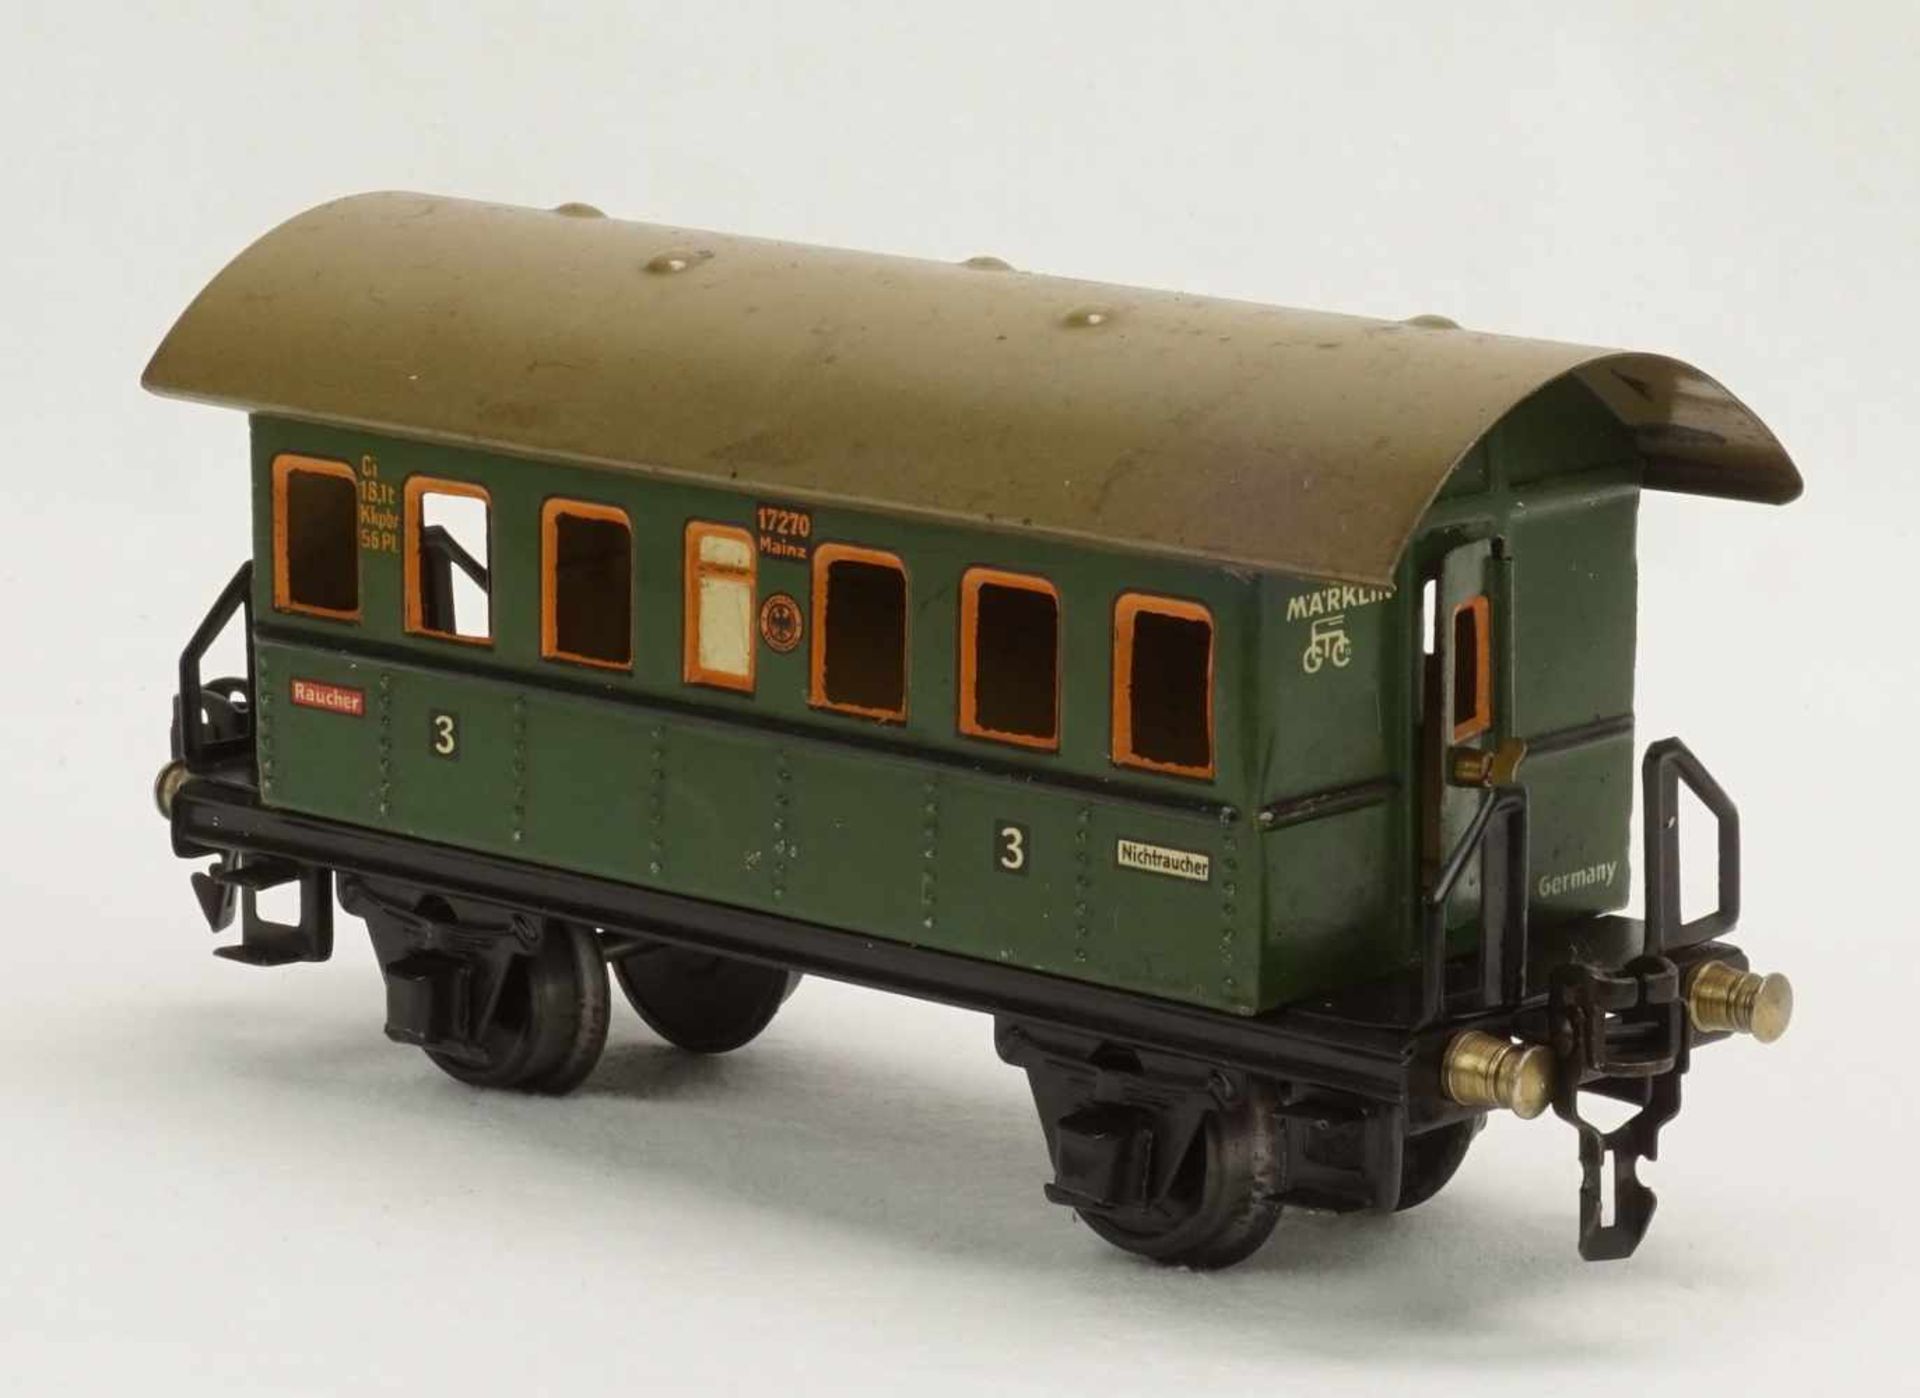 Fünf Märklin Güterwagen und ein Personenwagen, Spur 0, um 1930Blech lithografiert, Personenwagen - Bild 2 aus 13